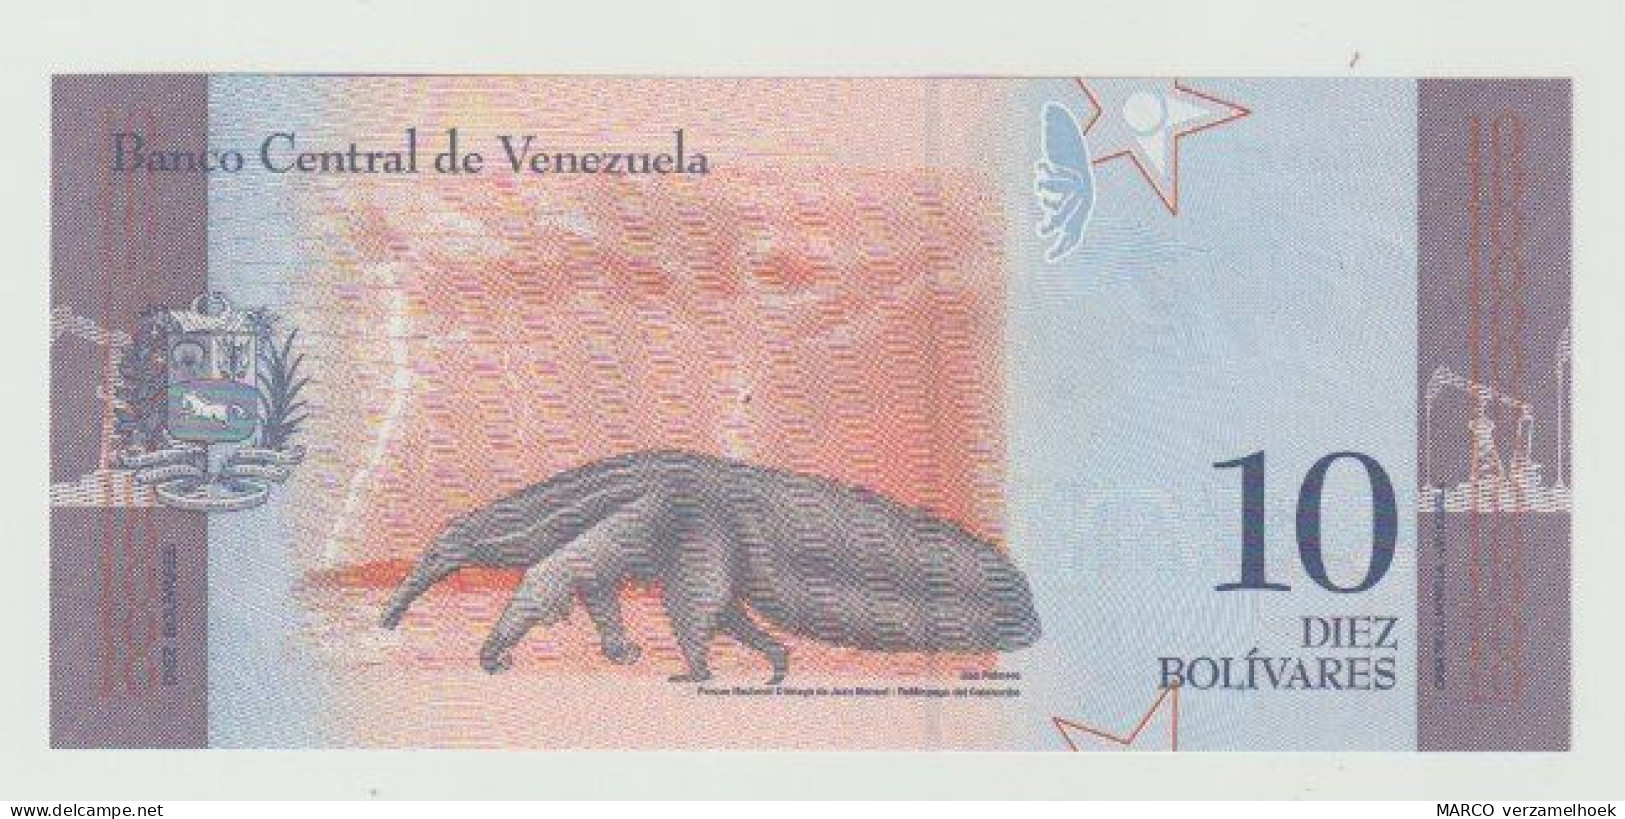 Banknote Banco Central De Venezuela 10 Bolivares 2018 UNC - Venezuela